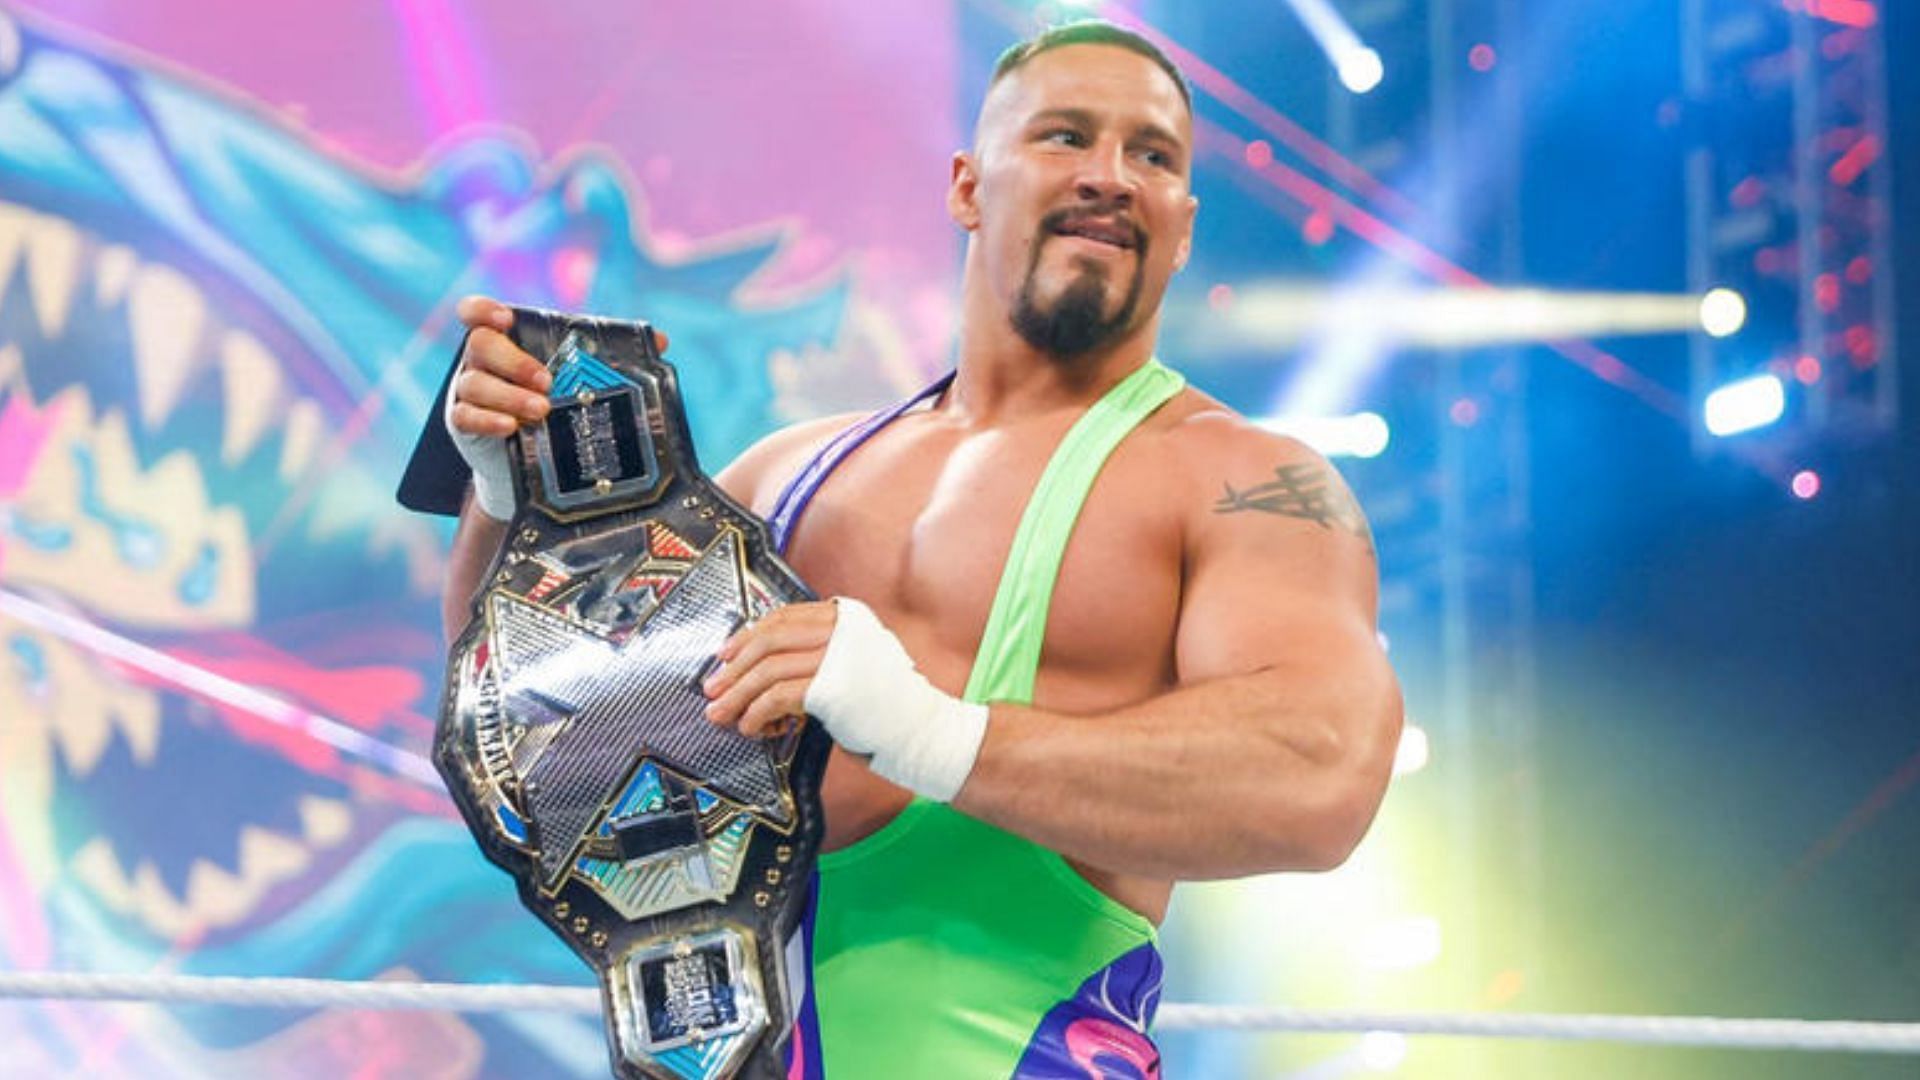 Bron Breakker is a two-time WWE NXT Champion